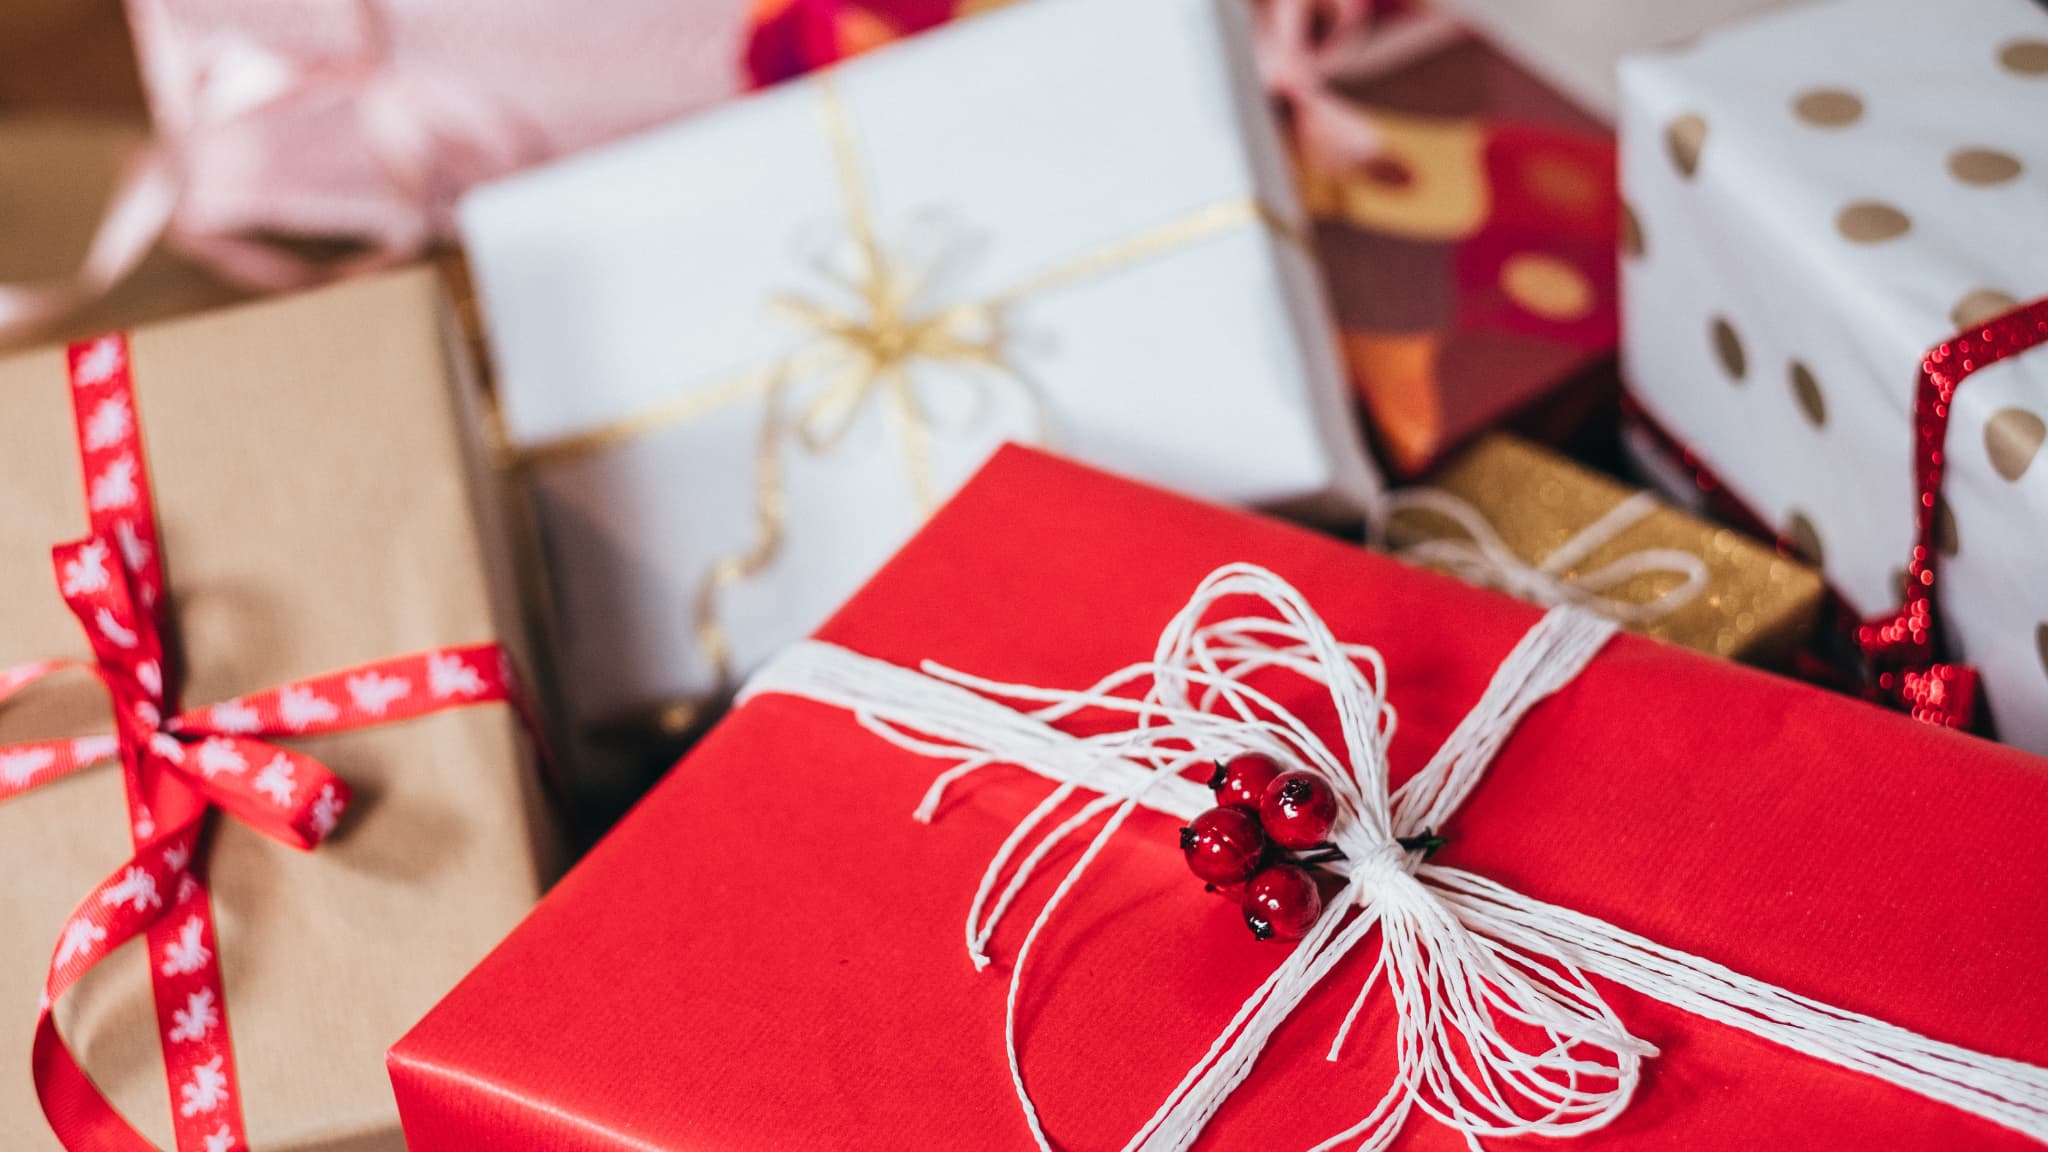 Noël. Cartes cadeaux : près d'un milliard d'euros non dépensés chaque année